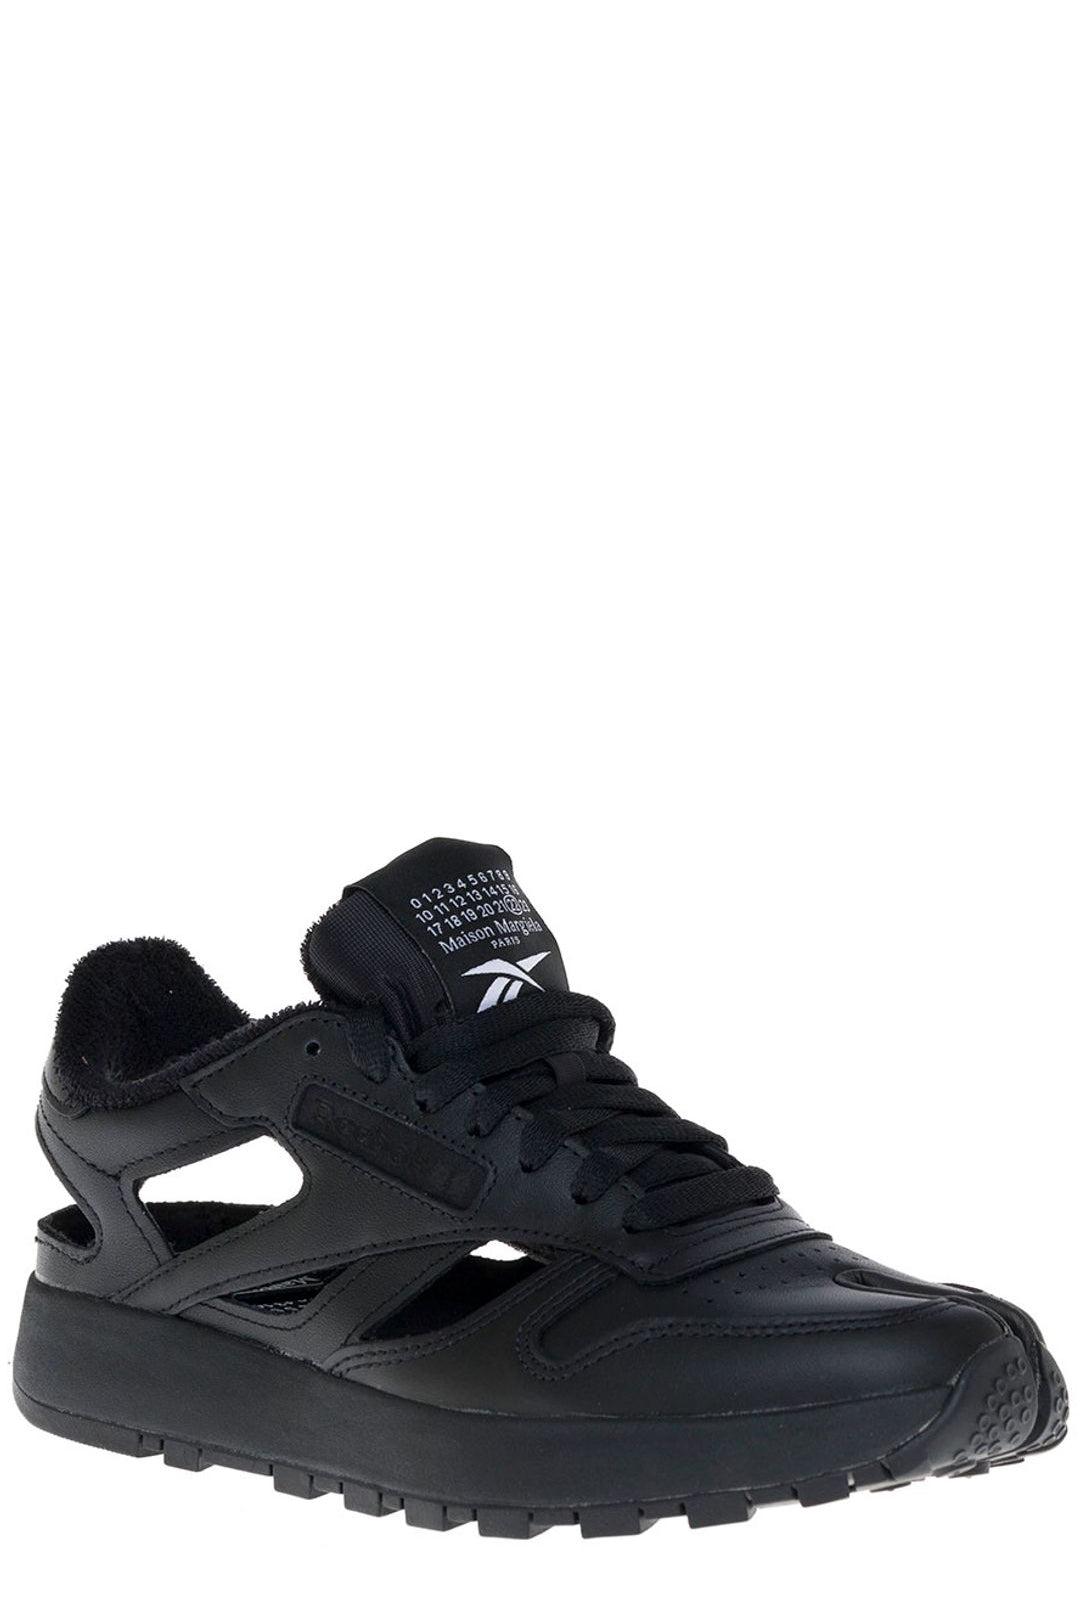 Maison Margiela Leather X Reebok Tabi Cut-out Sneakers in Black - Lyst